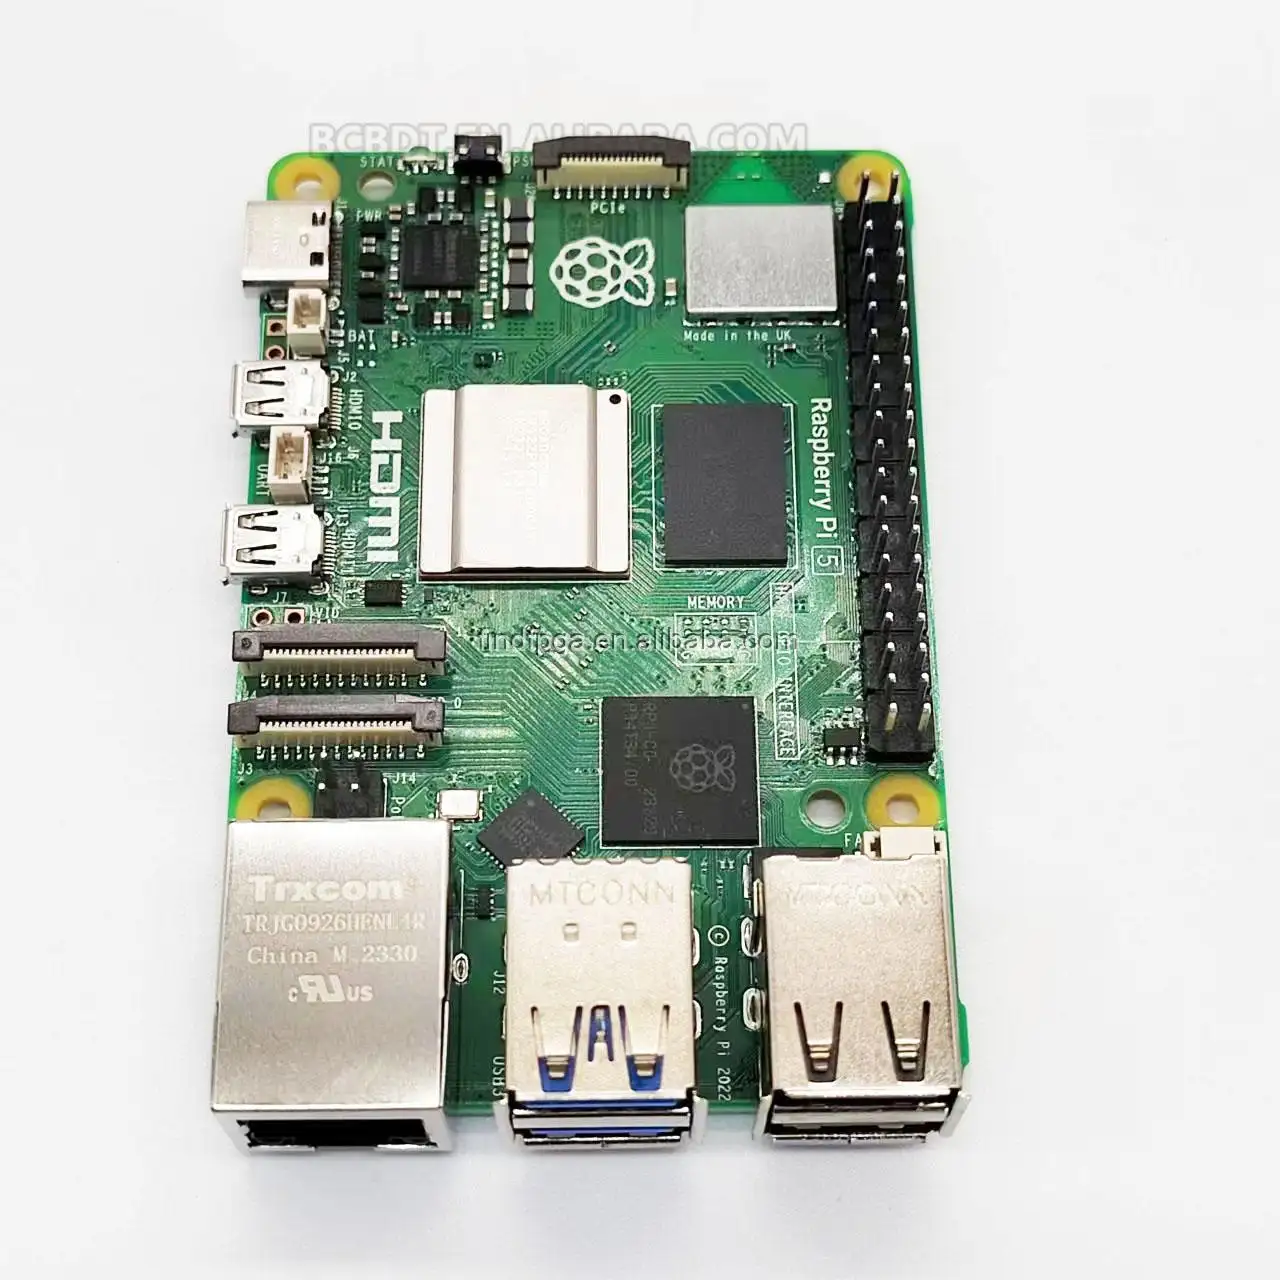 رسمي جهاز Raspberry Pi 5 Cortex-A76 Linux 4GB 8GB صنع في المملكة المتحدة أصلي وجديد Raspberry Pi 5 4gb 8gb في المخزون